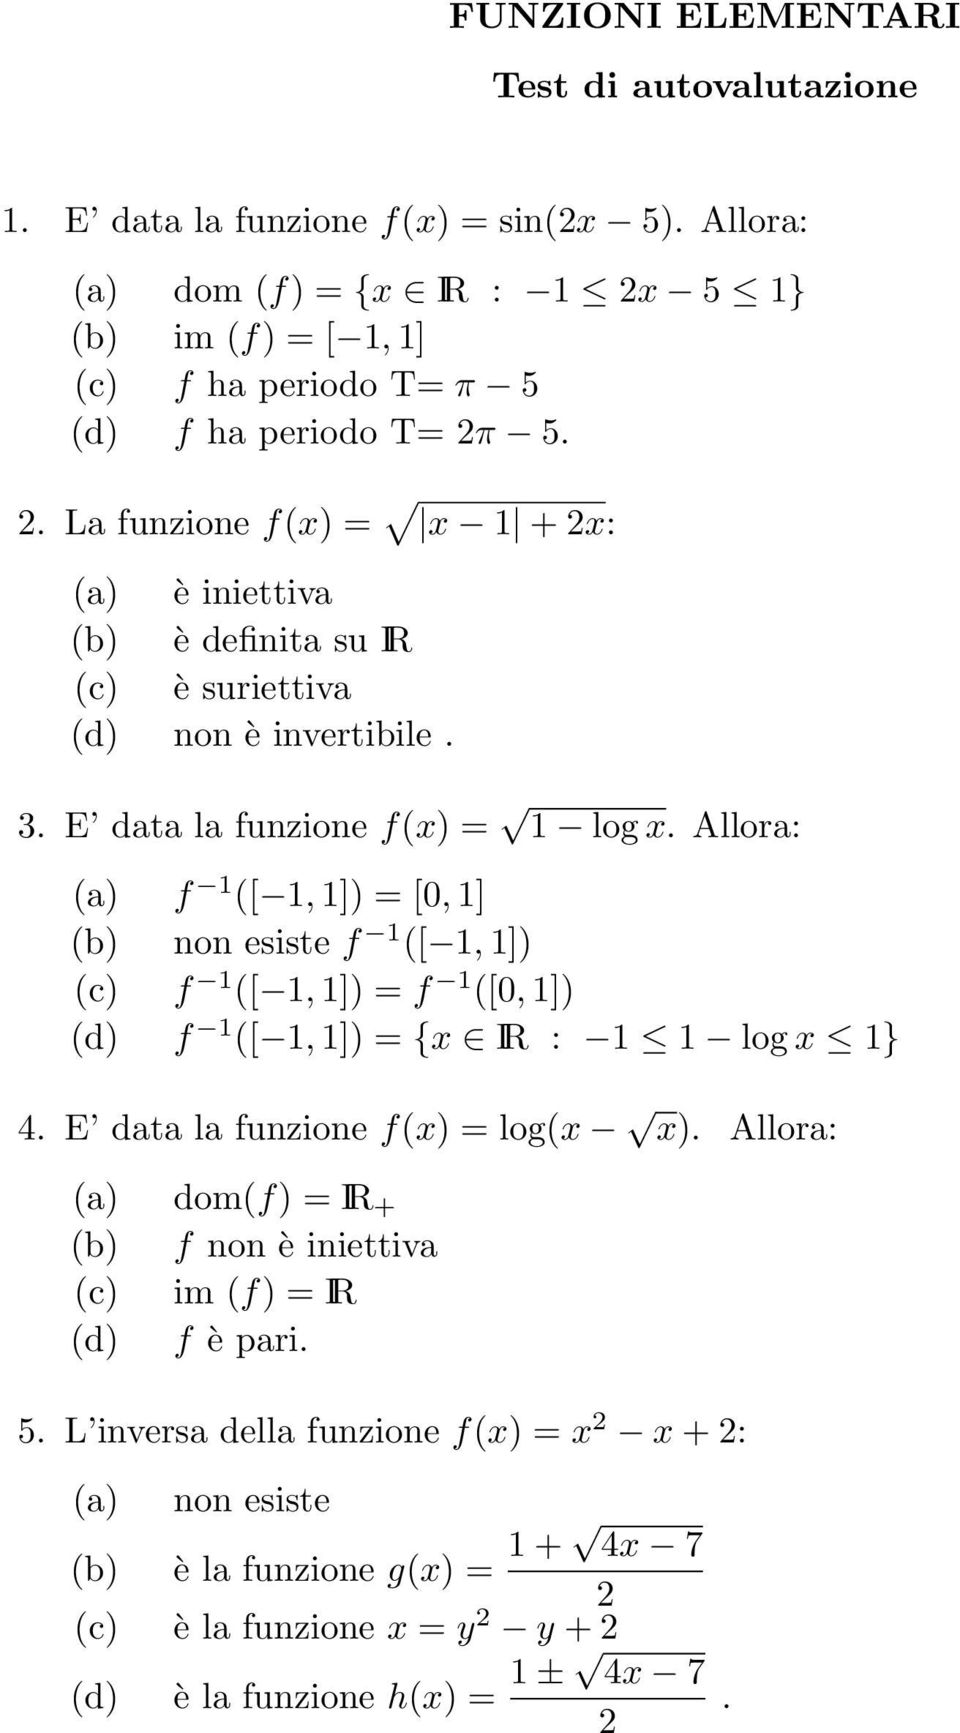 = [0, 1] b) non esiste f 1 [ 1, 1]) c) f 1 [ 1, 1]) = f 1 [0, 1]) d) f 1 [ 1, 1]) = {x IR : 1 1 log x 1} E data la funzione fx) = logx x) Allora: a) domf) = IR + b) f non è